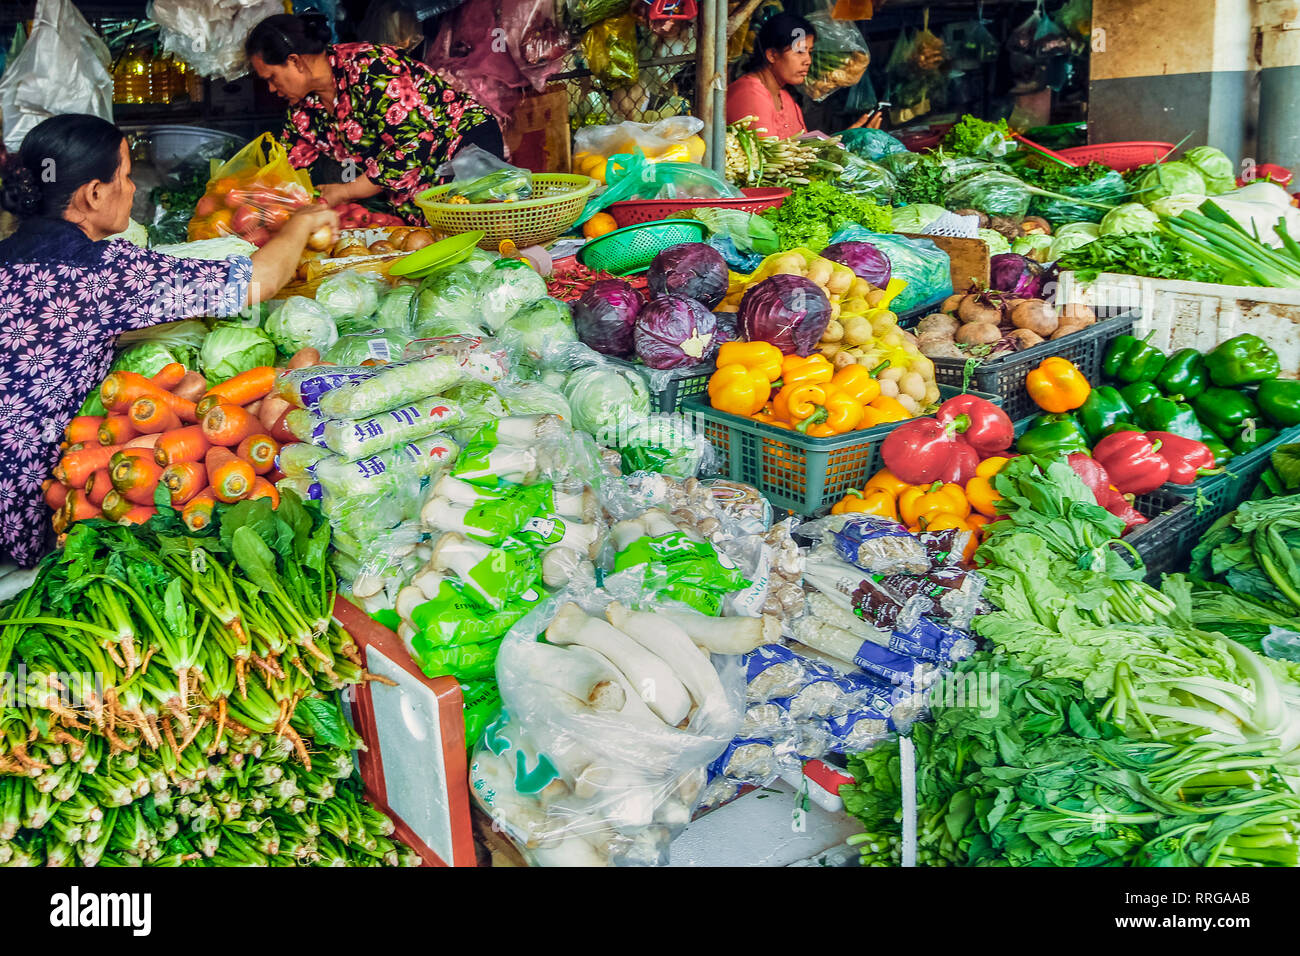 Gut gefüllte Gemüse an dieser großen alten Marktstand, Central Market, Stadtzentrum, Phnom Penh, Kambodscha, Indochina, Südostasien, Asien Stockfoto